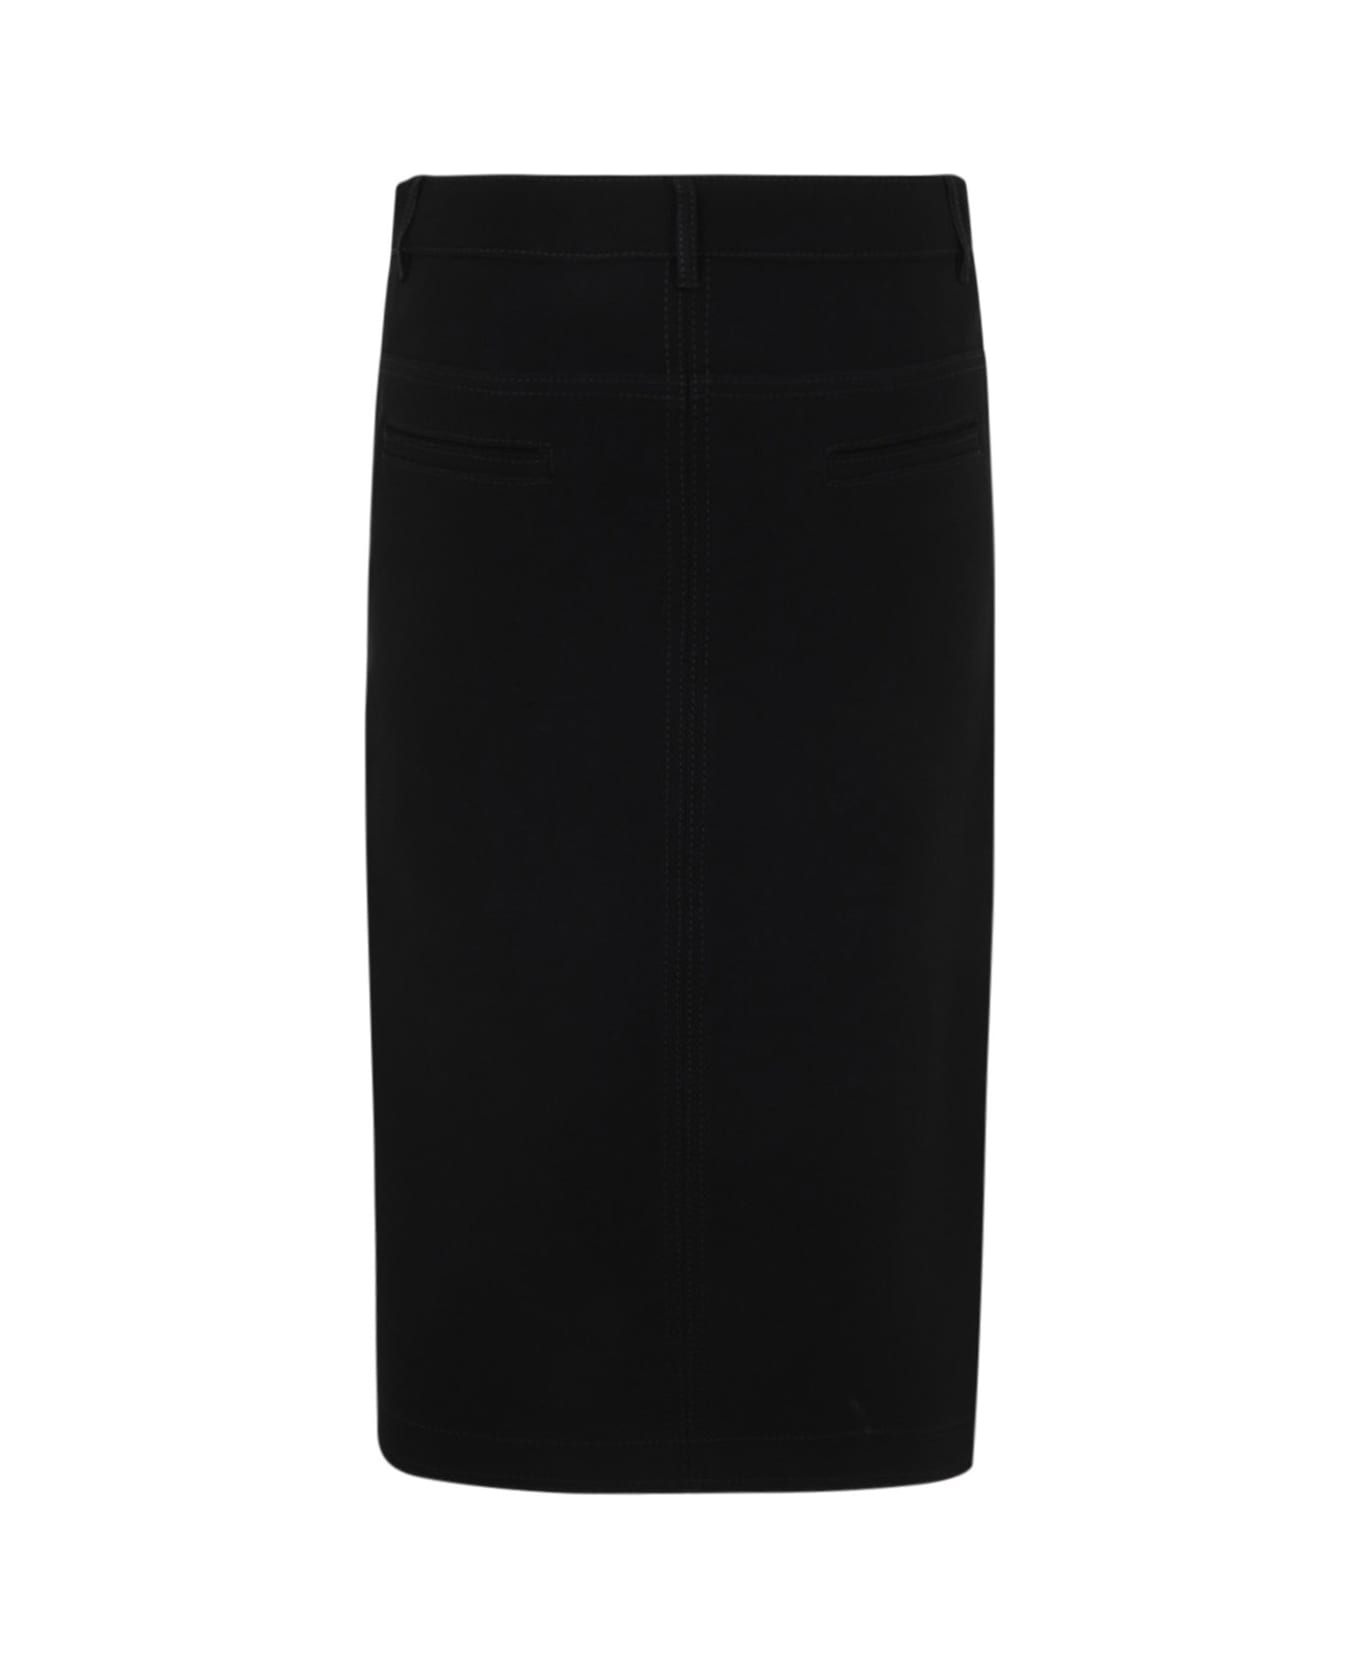 N.21 Longuette Pencil Skirt - Black